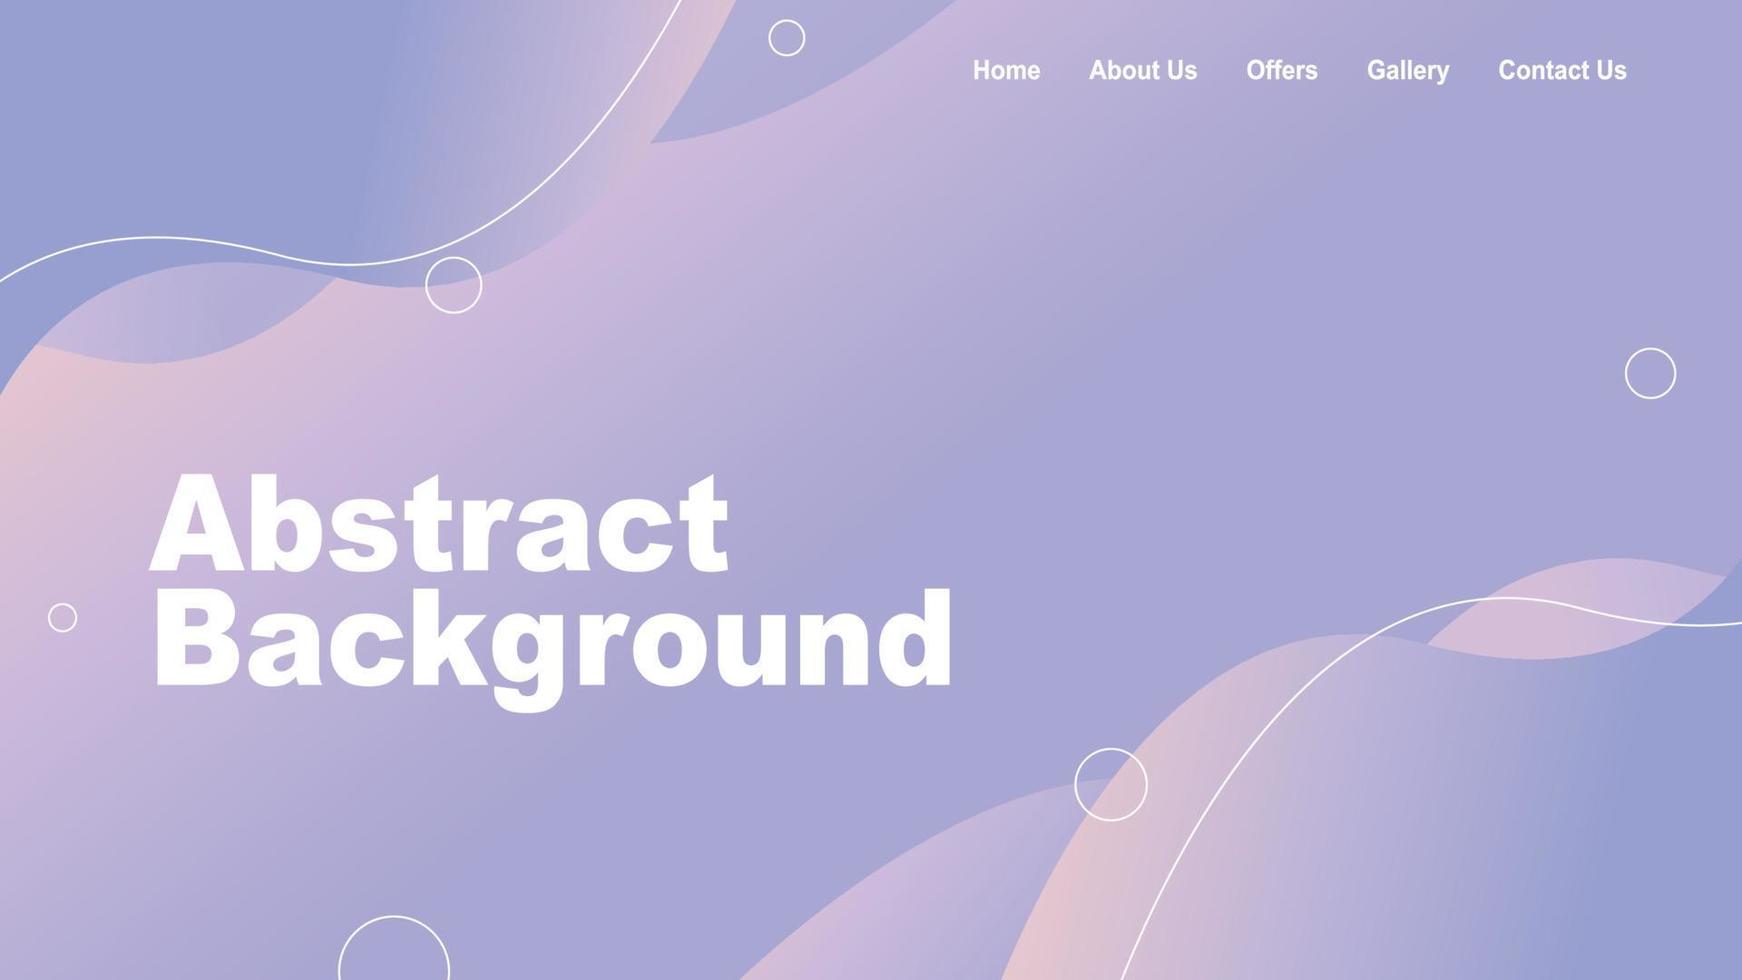 página de inicio del sitio web de fondo abstracto con hermoso neón púrpura pastel. vector libre